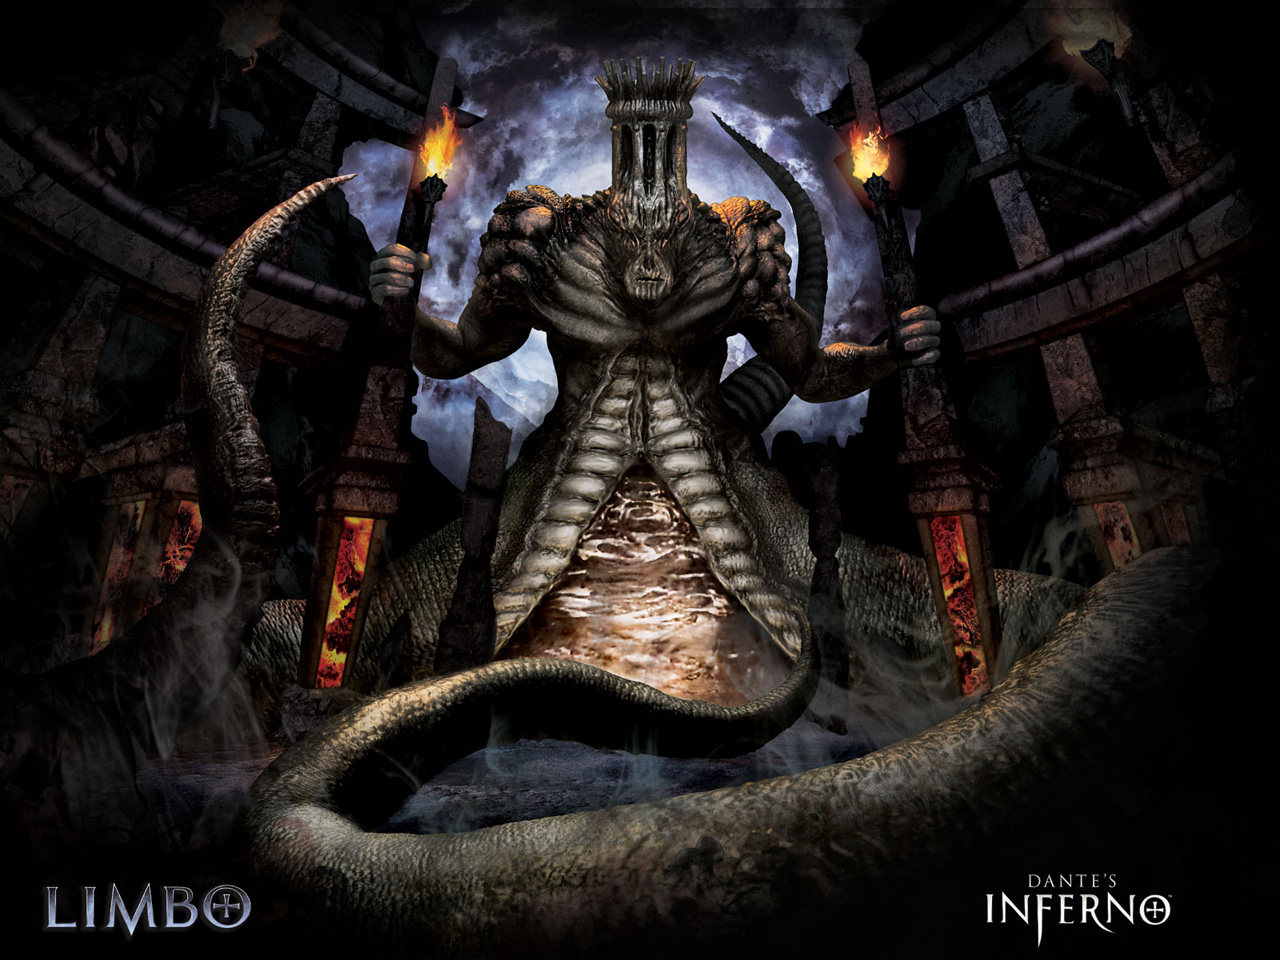 Exorcizando demônios com o jogo Dante's Inferno - Jornal O Globo